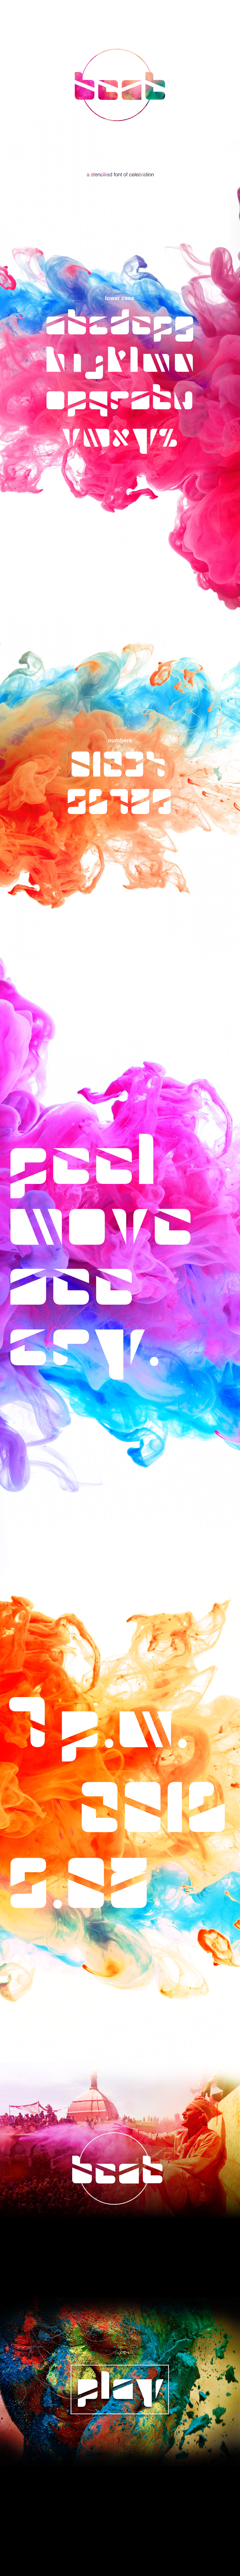 Saksham  verma BEAT art font type Typeface party celebration holi colours